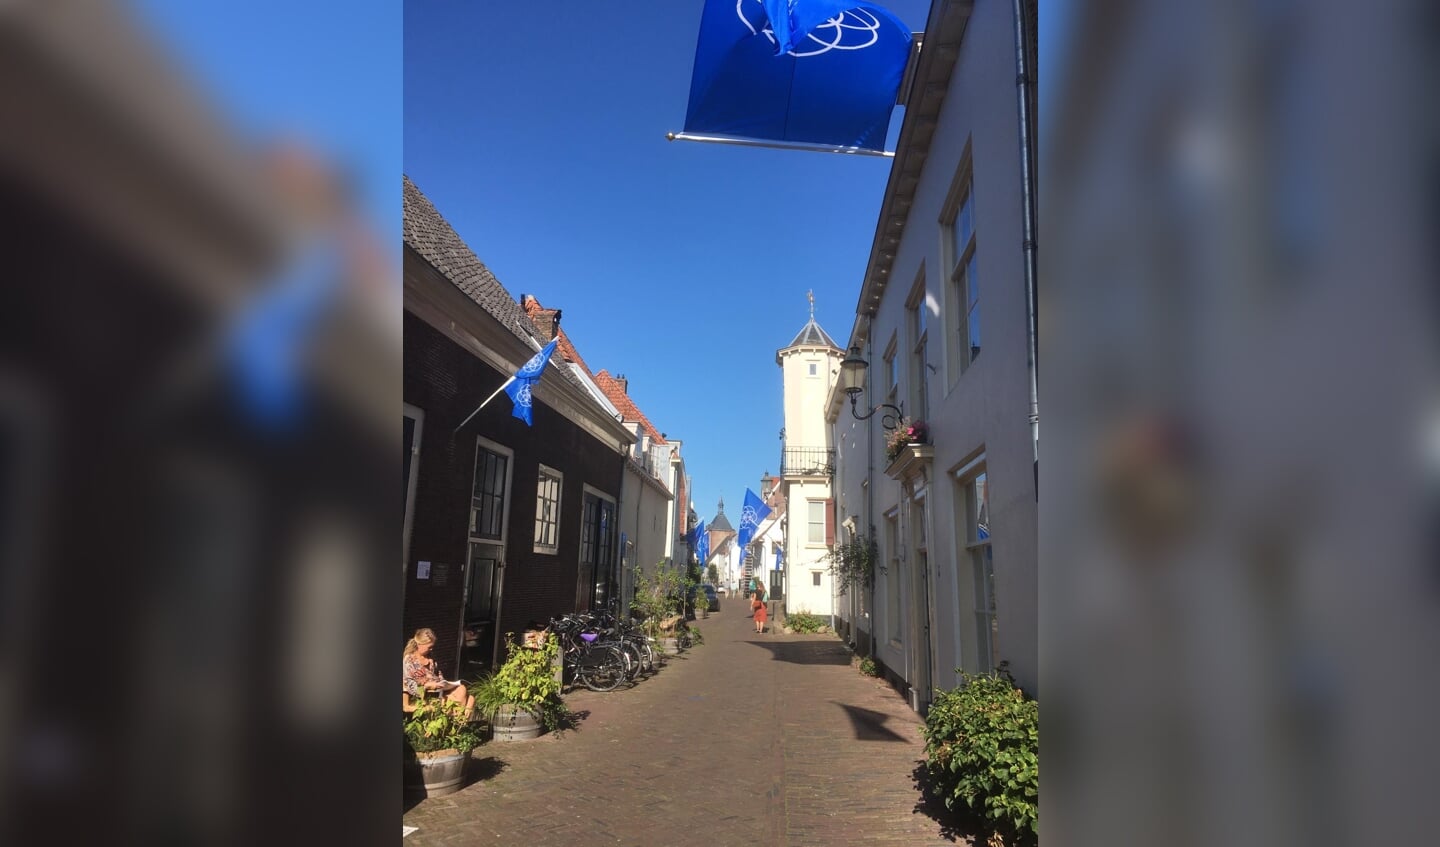 De Muurhuizen vanaf Tinnenburg, versiert met vlaggen van de aarde.